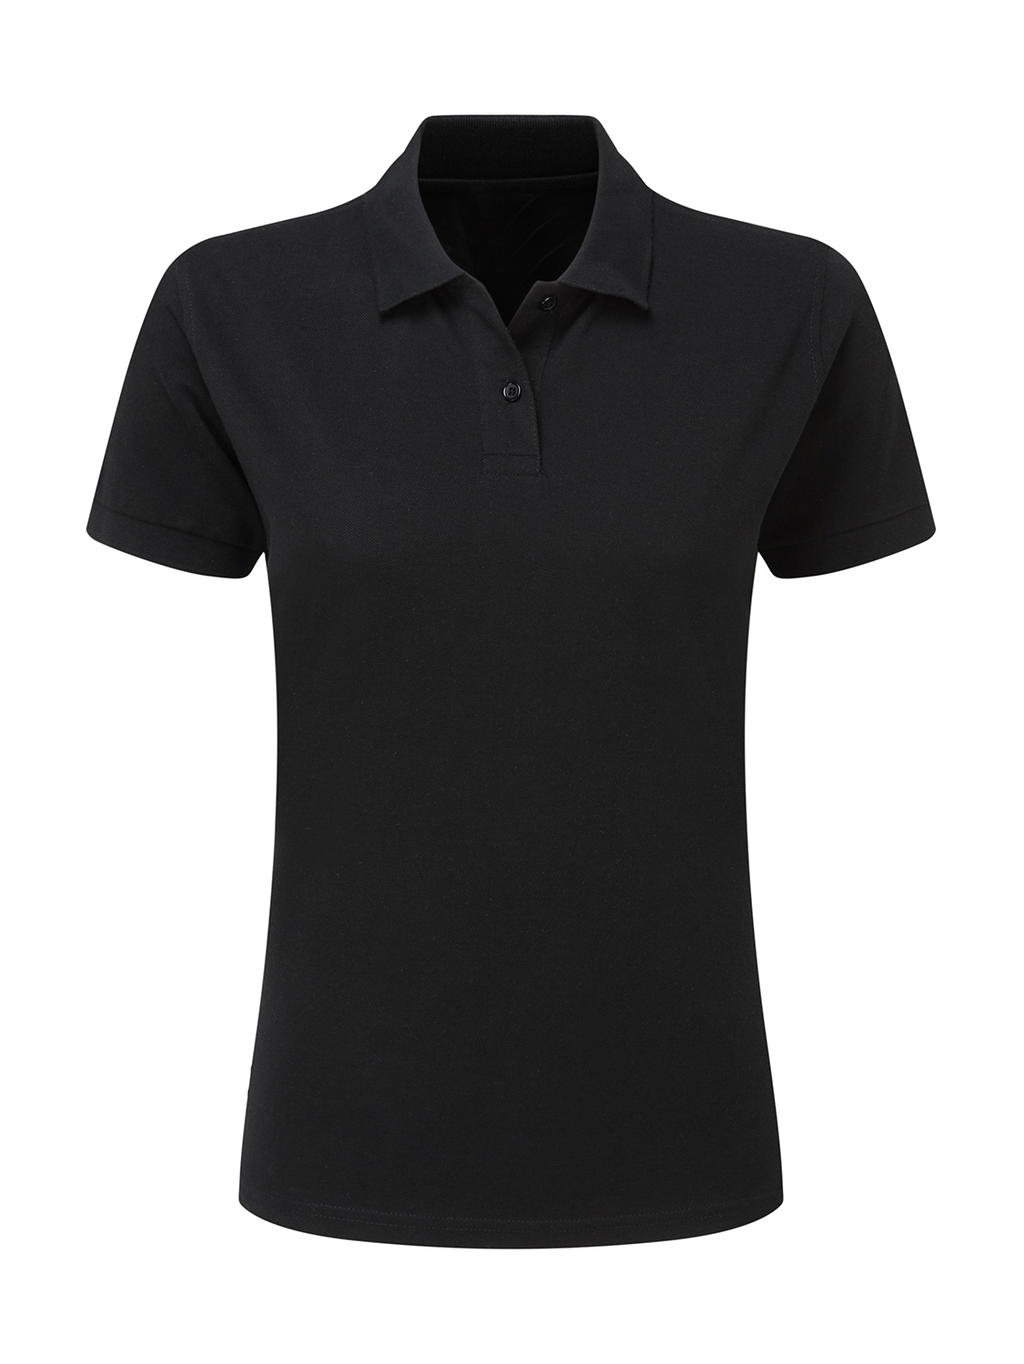  Ladies Cotton Polo in Farbe Black